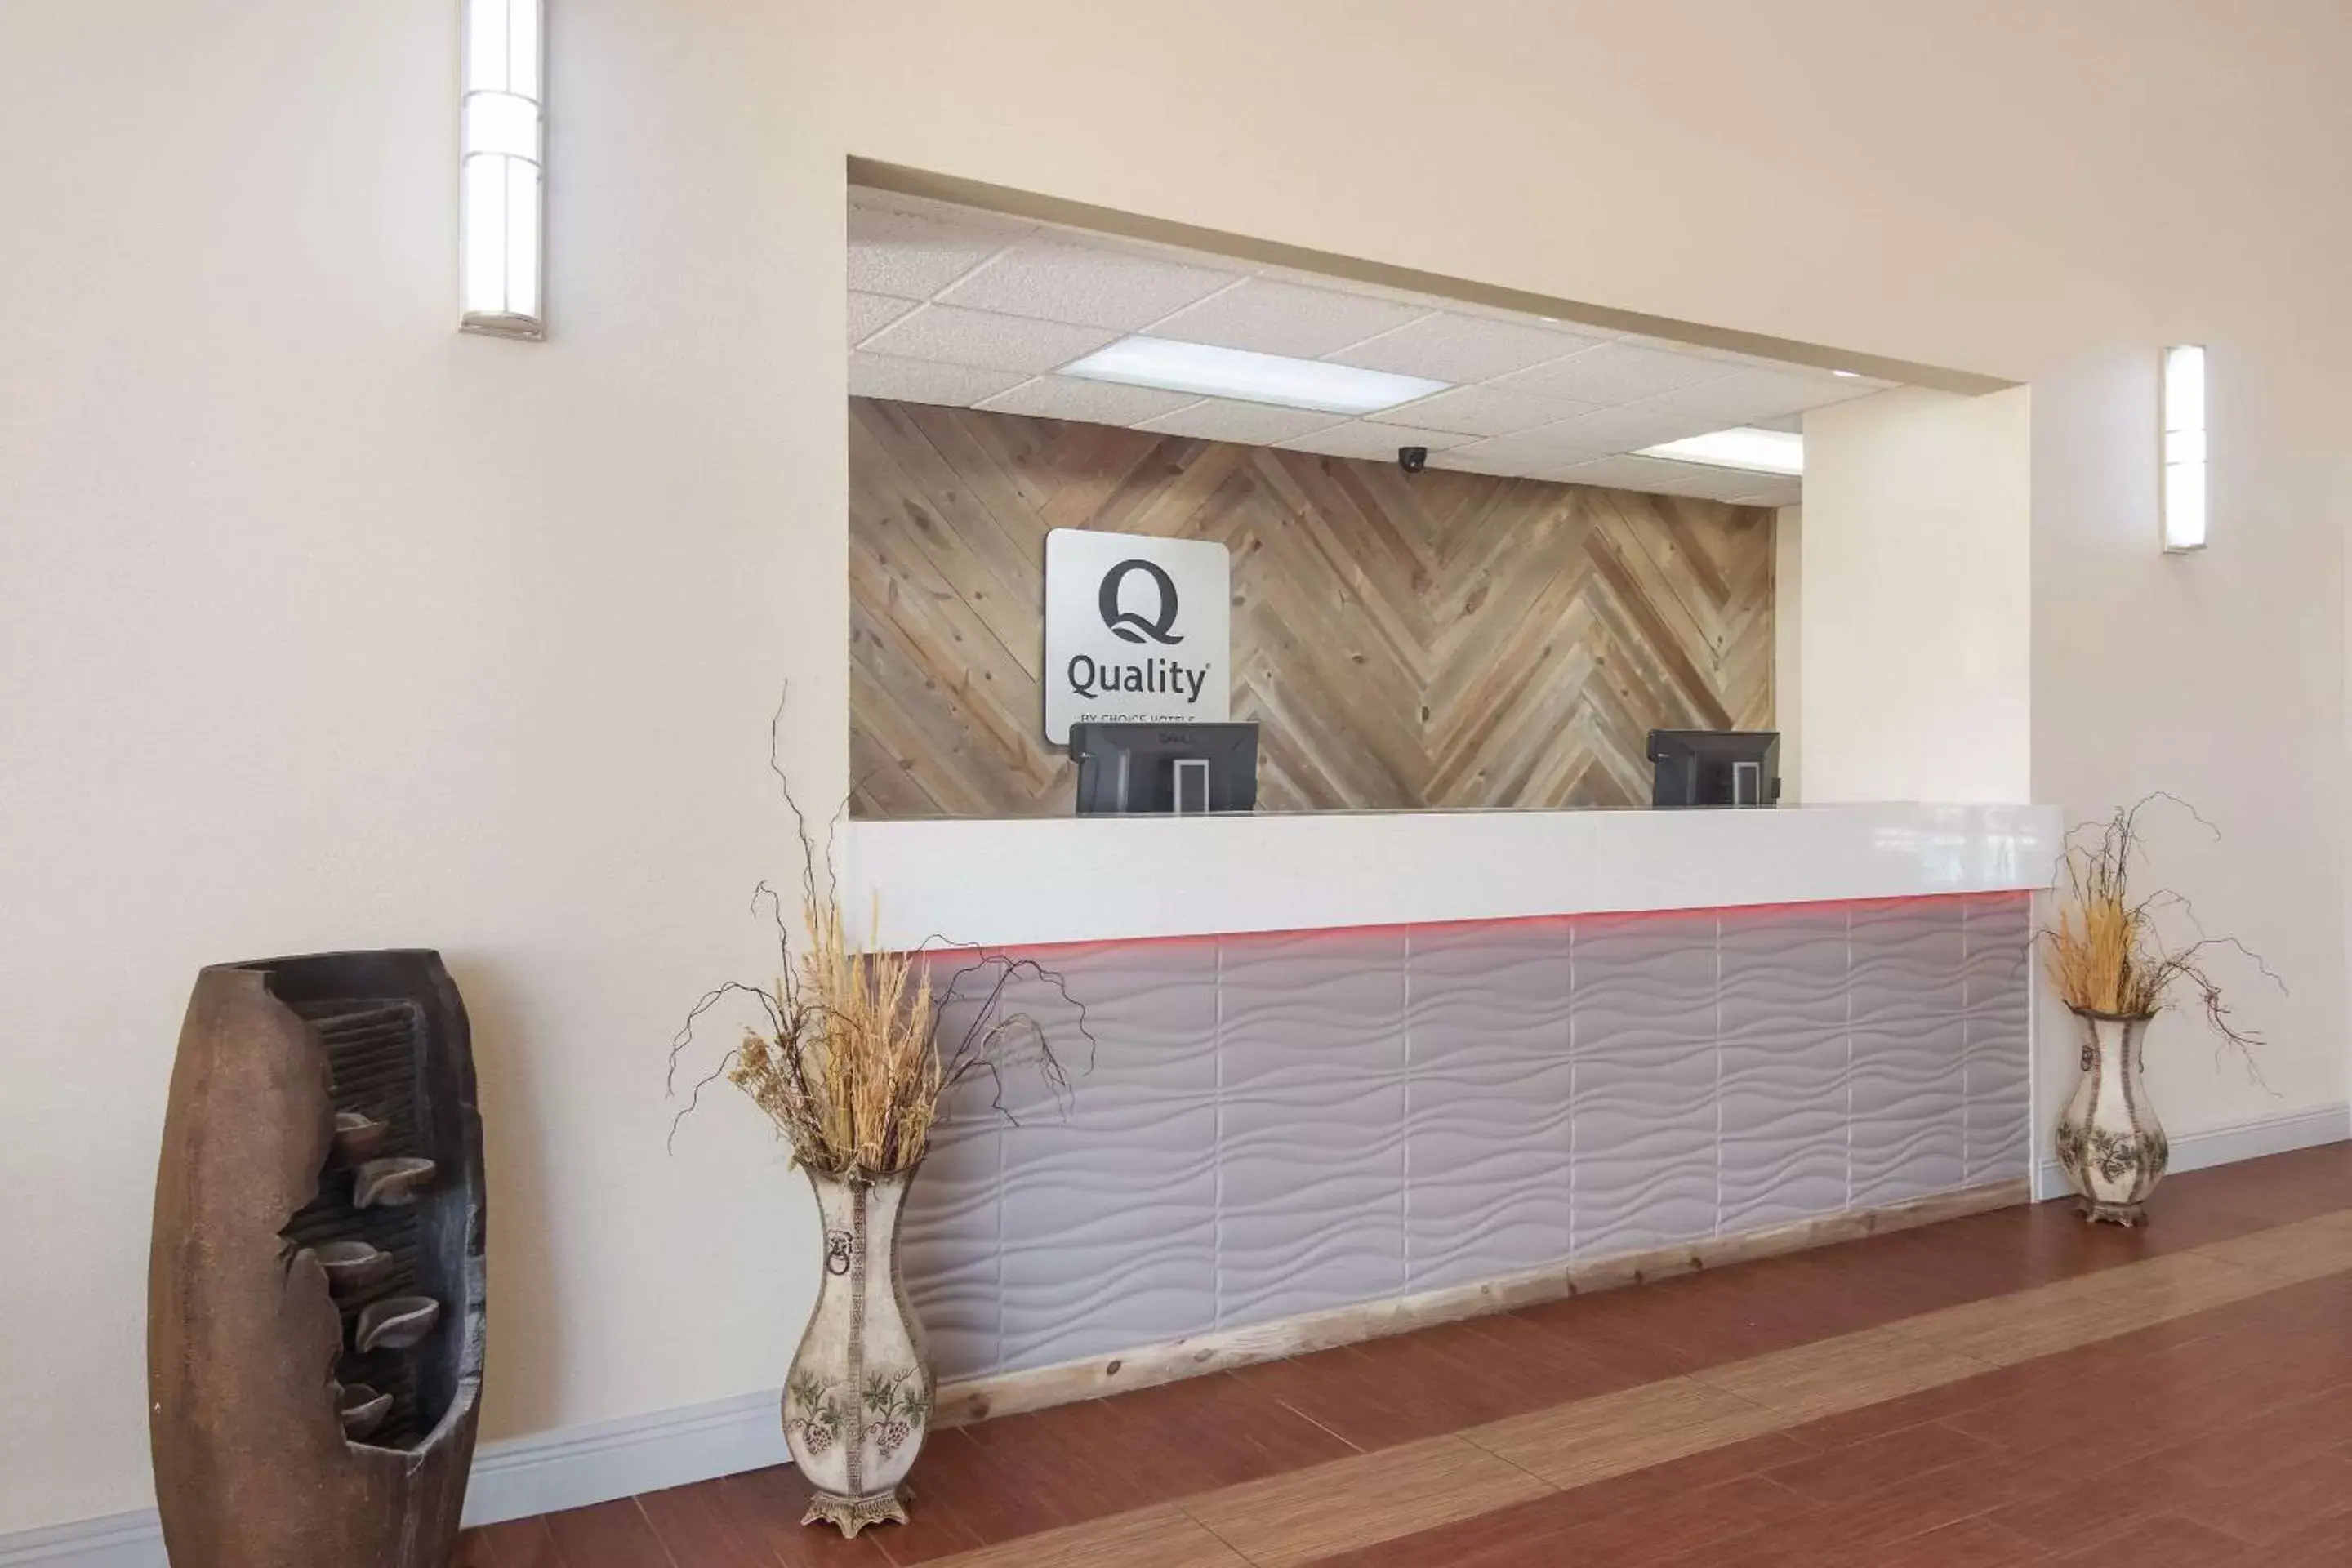 Lobby or reception, Lobby/Reception in Quality Inn Magnolia